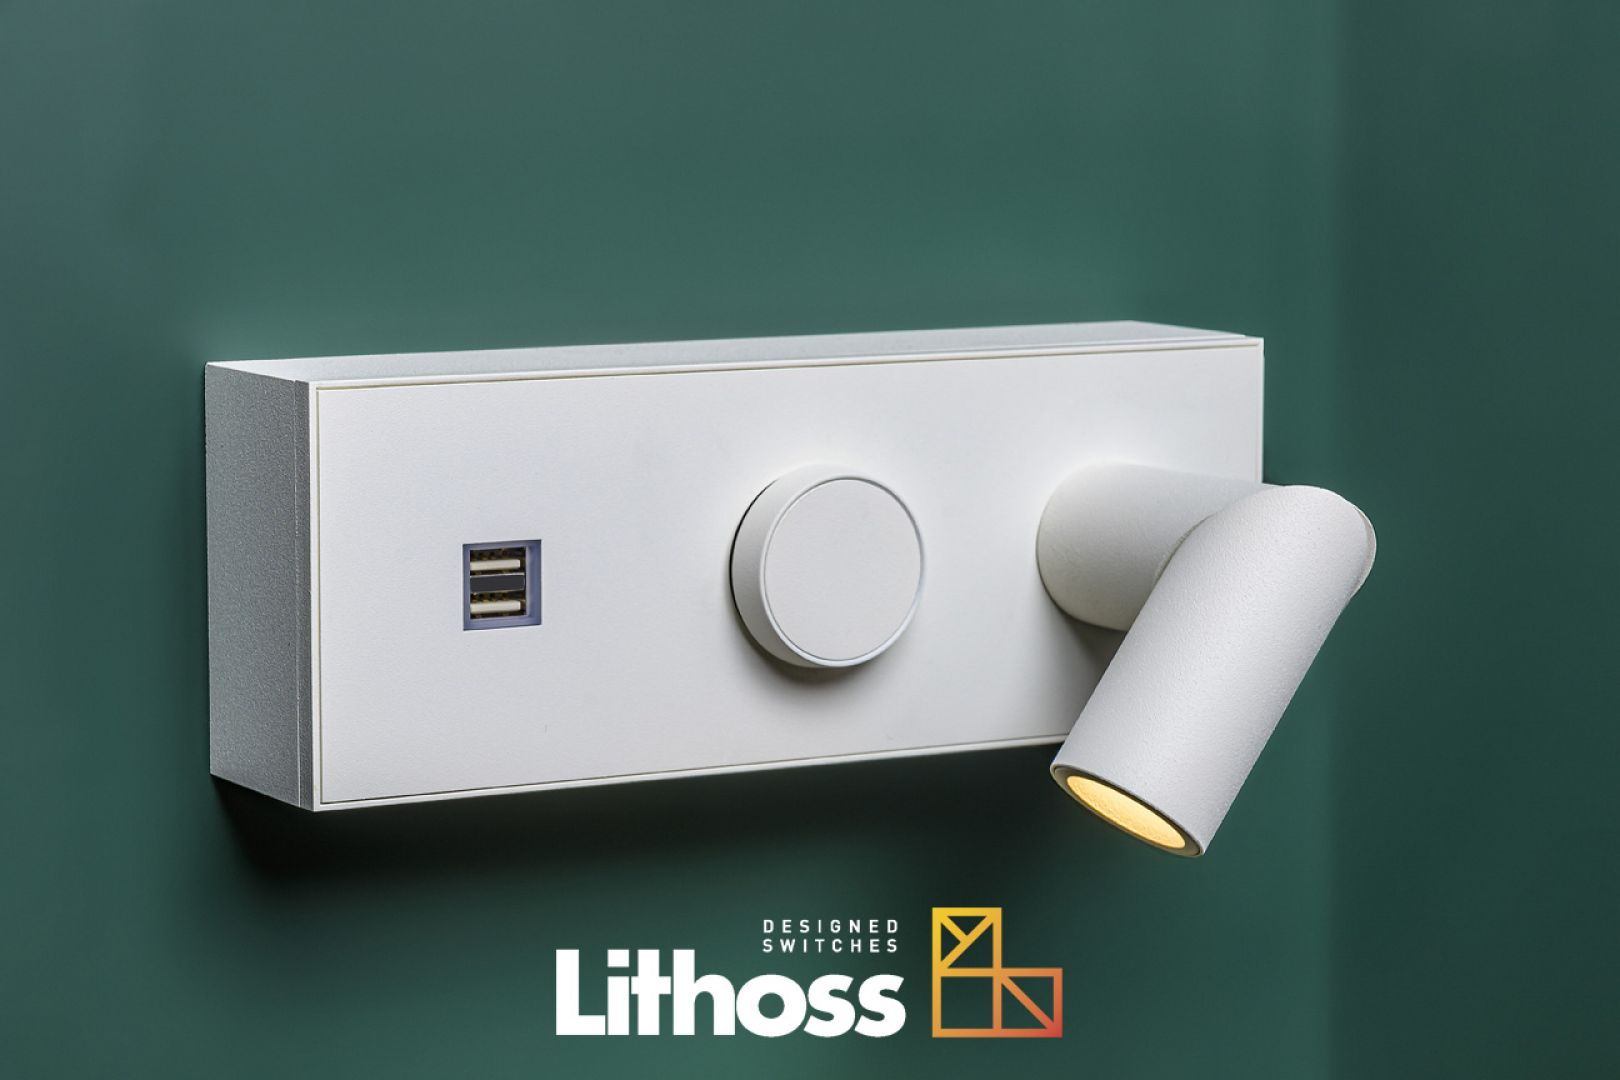 Zestaw Lithoss: Lampka + włącznik + gniazdo 230V + ładowarka USB/Produkt Design. Produkt zgłoszony do konkursu Dobry Design 2020.